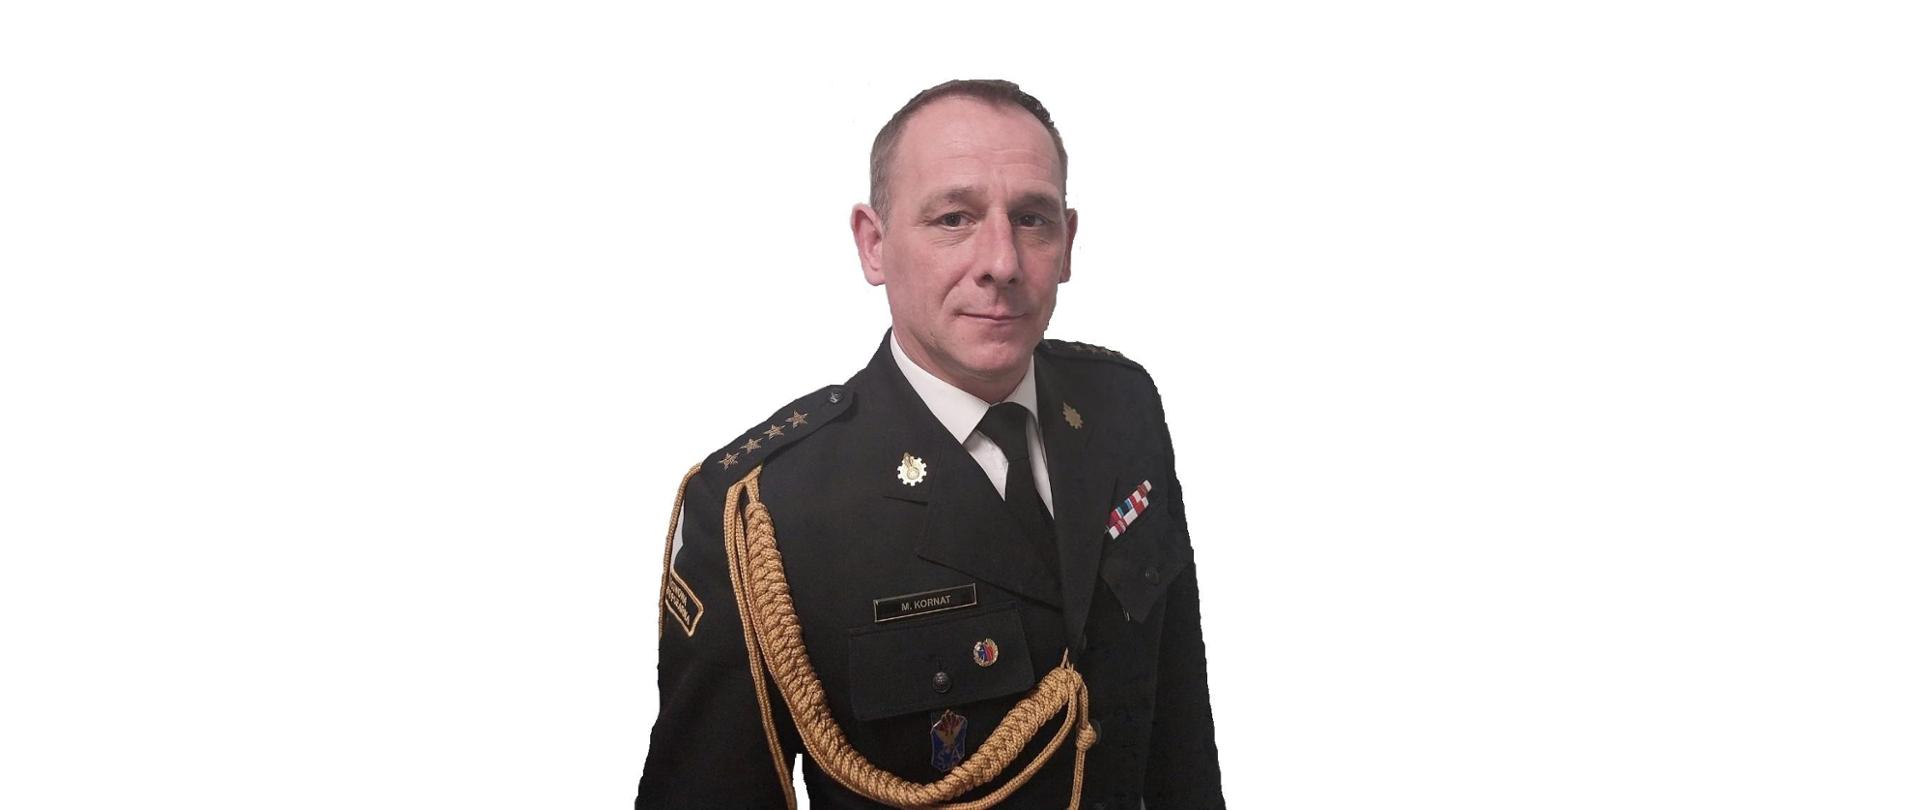 Zdjęcie przedstawia pełniącego obowiązki komendanta powiatowego Państwowej Straży Pożarnej w Łęczycy starszego kapitana Marcina Kornata w czarnym mundurze, na którym znajduje się stopień służbowy oraz odznaczenia strażackie. Zdjęcie portretowe na białym tle.